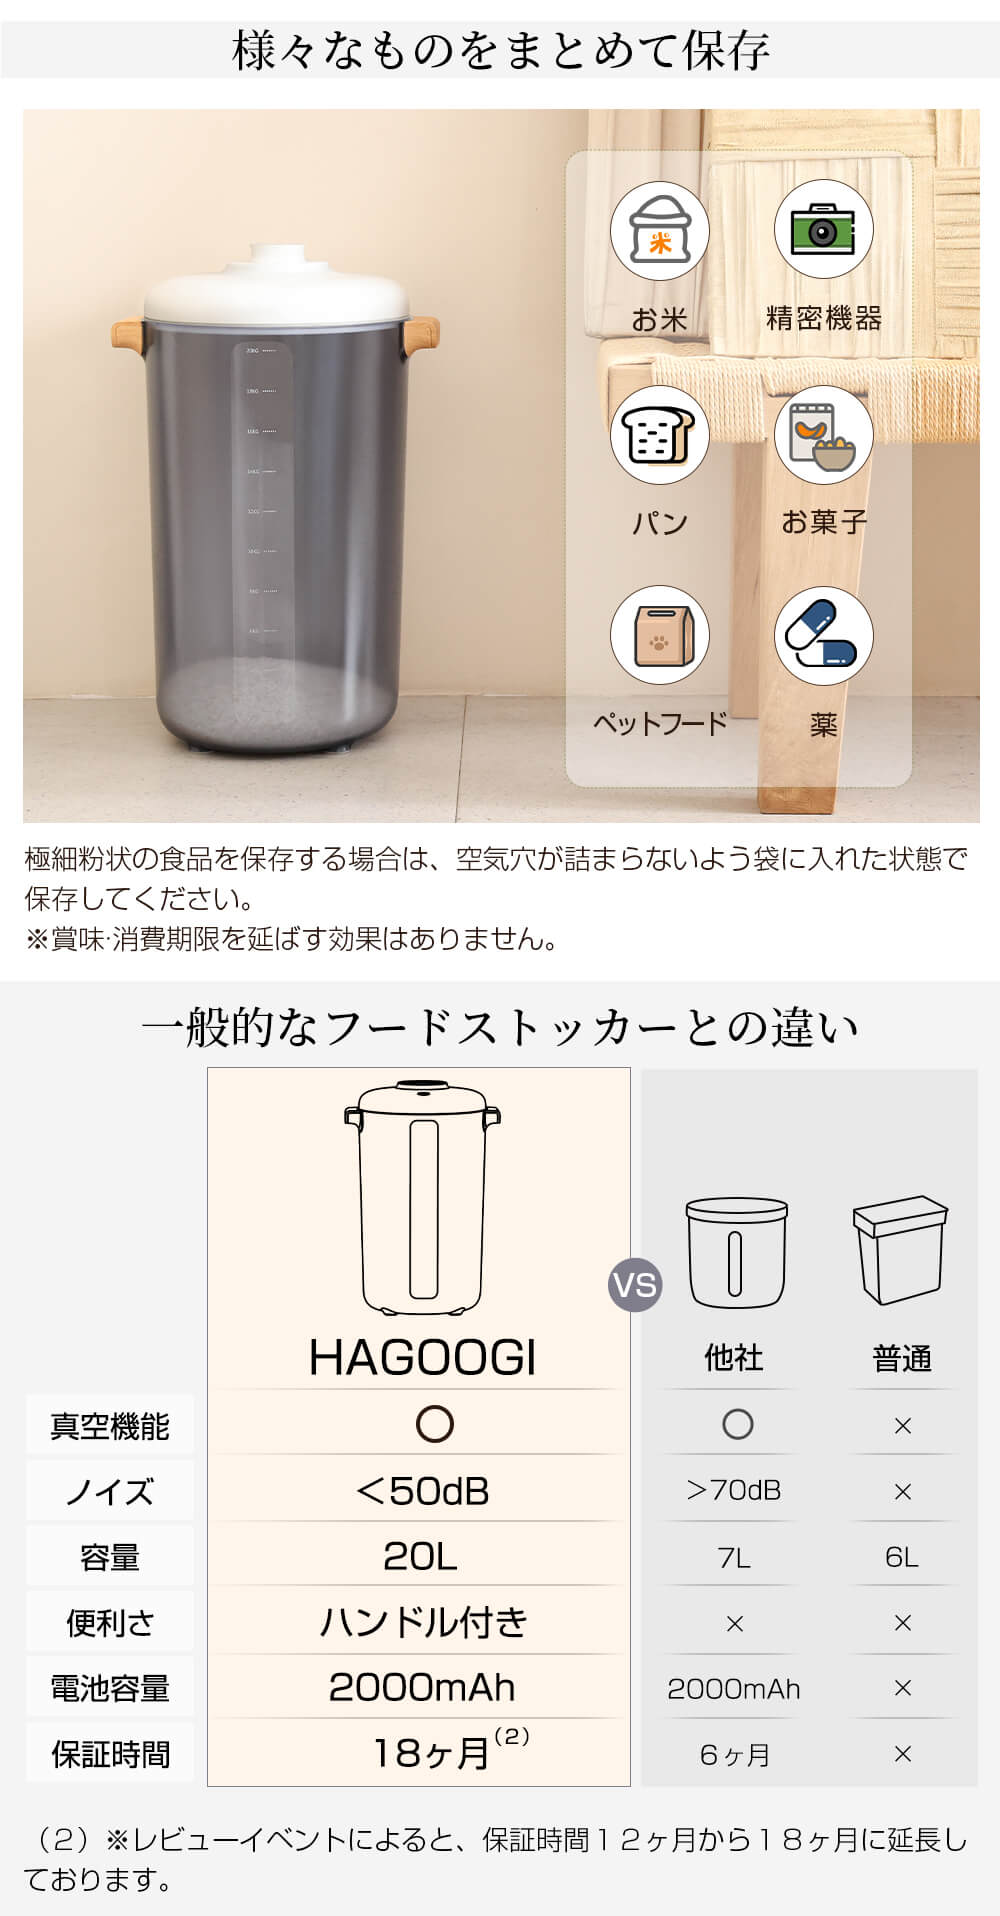 HAGOOGI(ハゴオギ)-真空保存容器(フードストッカー)-20L-RC0002-様々のものをまとめて保存